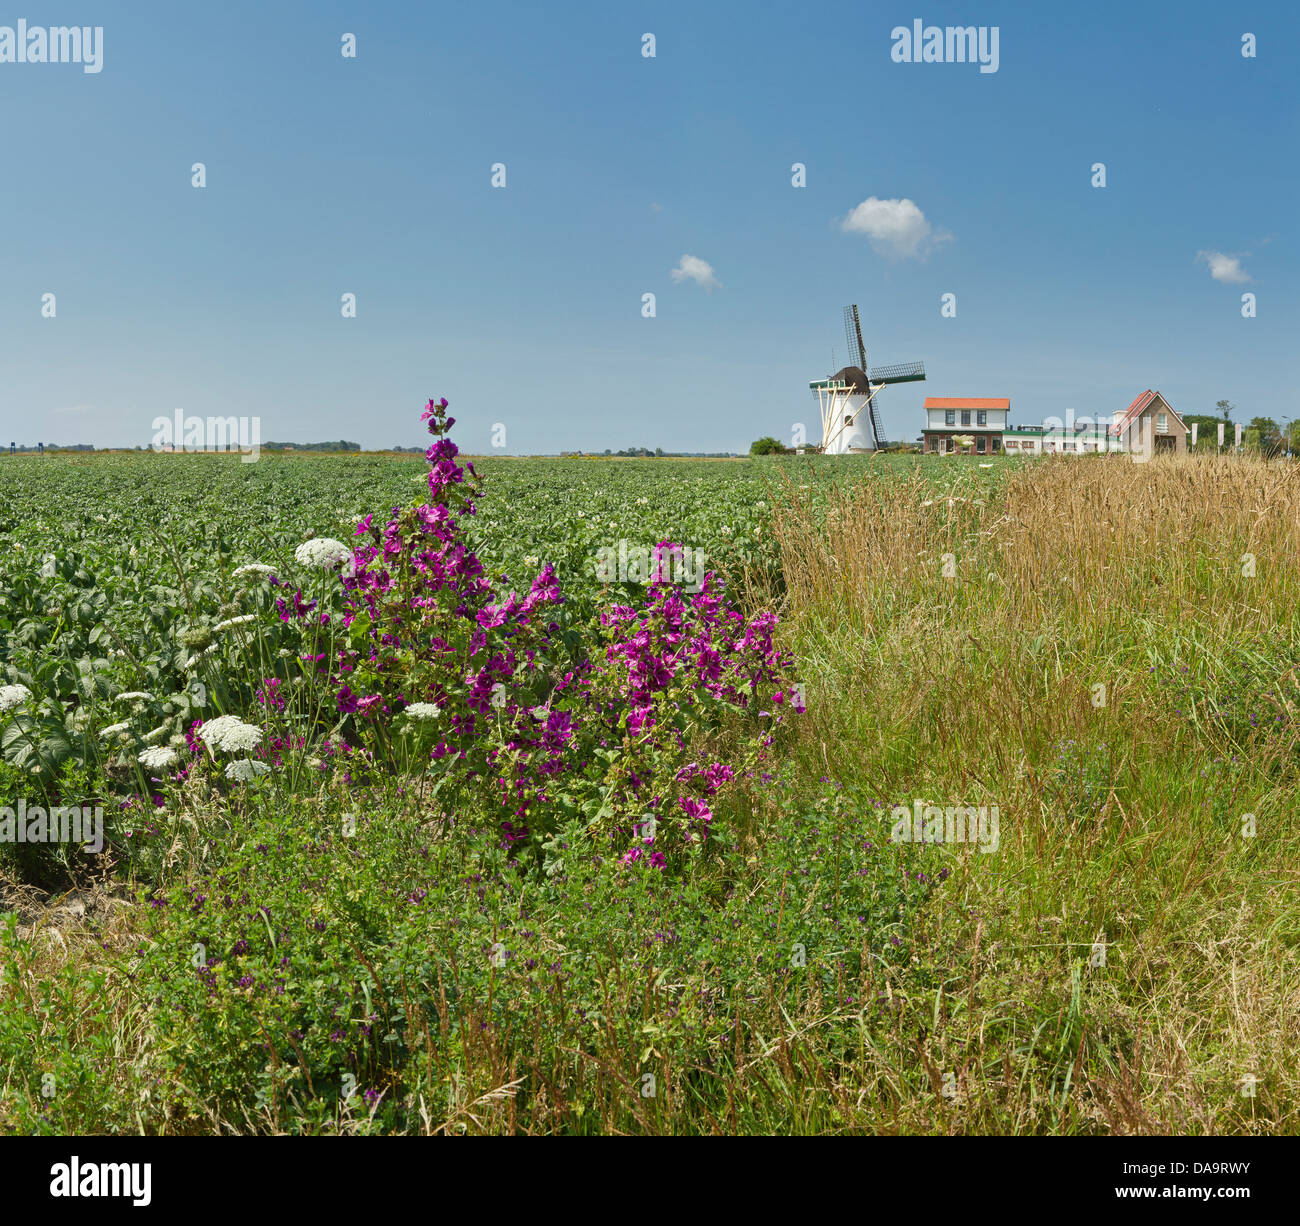 Netherlands, Holland, Europe, Elkerzee, Windmill, De Lelie, field, meadow, flowers, summer, Stock Photo